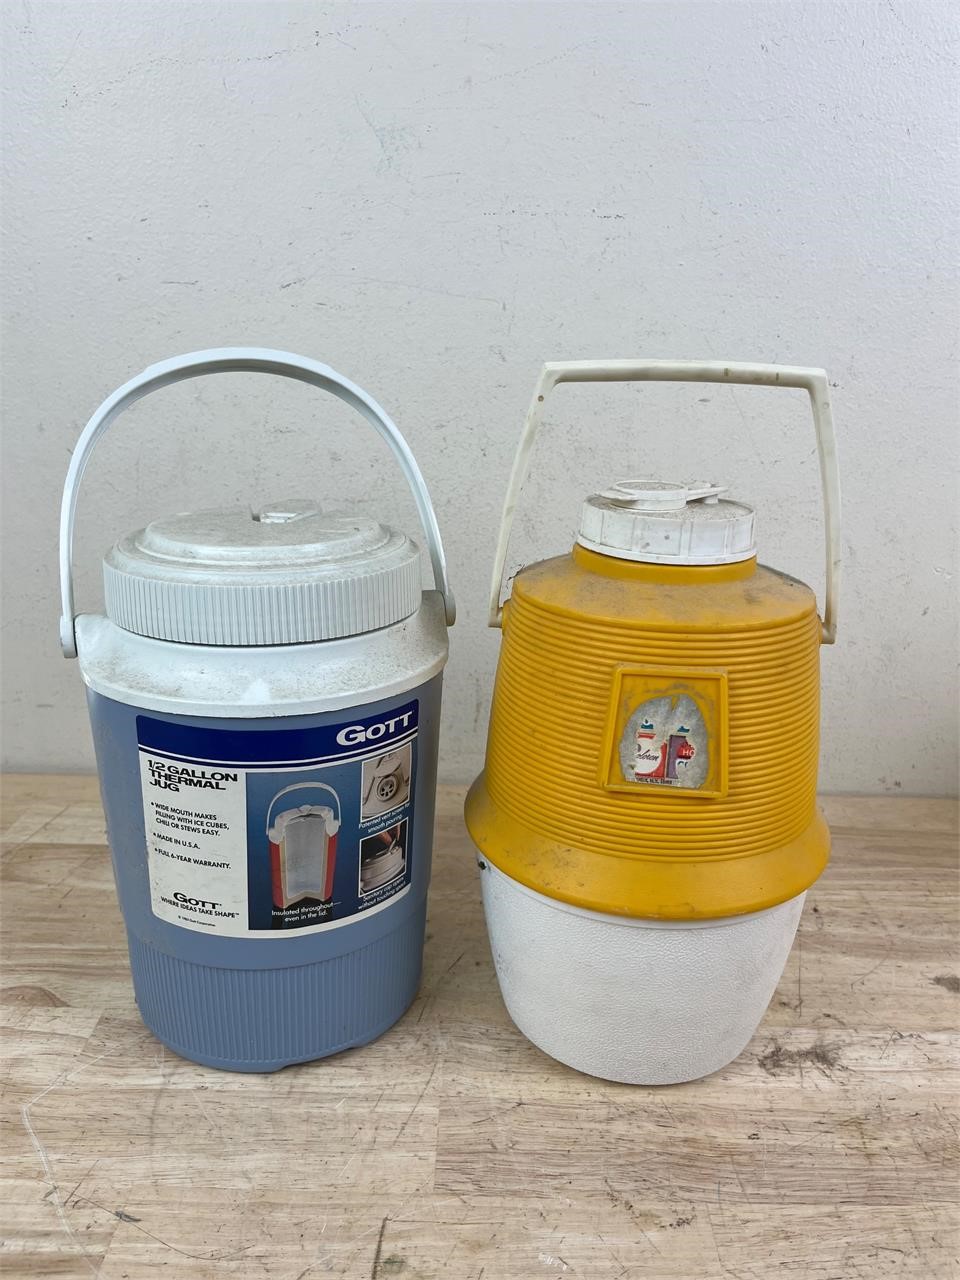 Two vintage thermal jugs